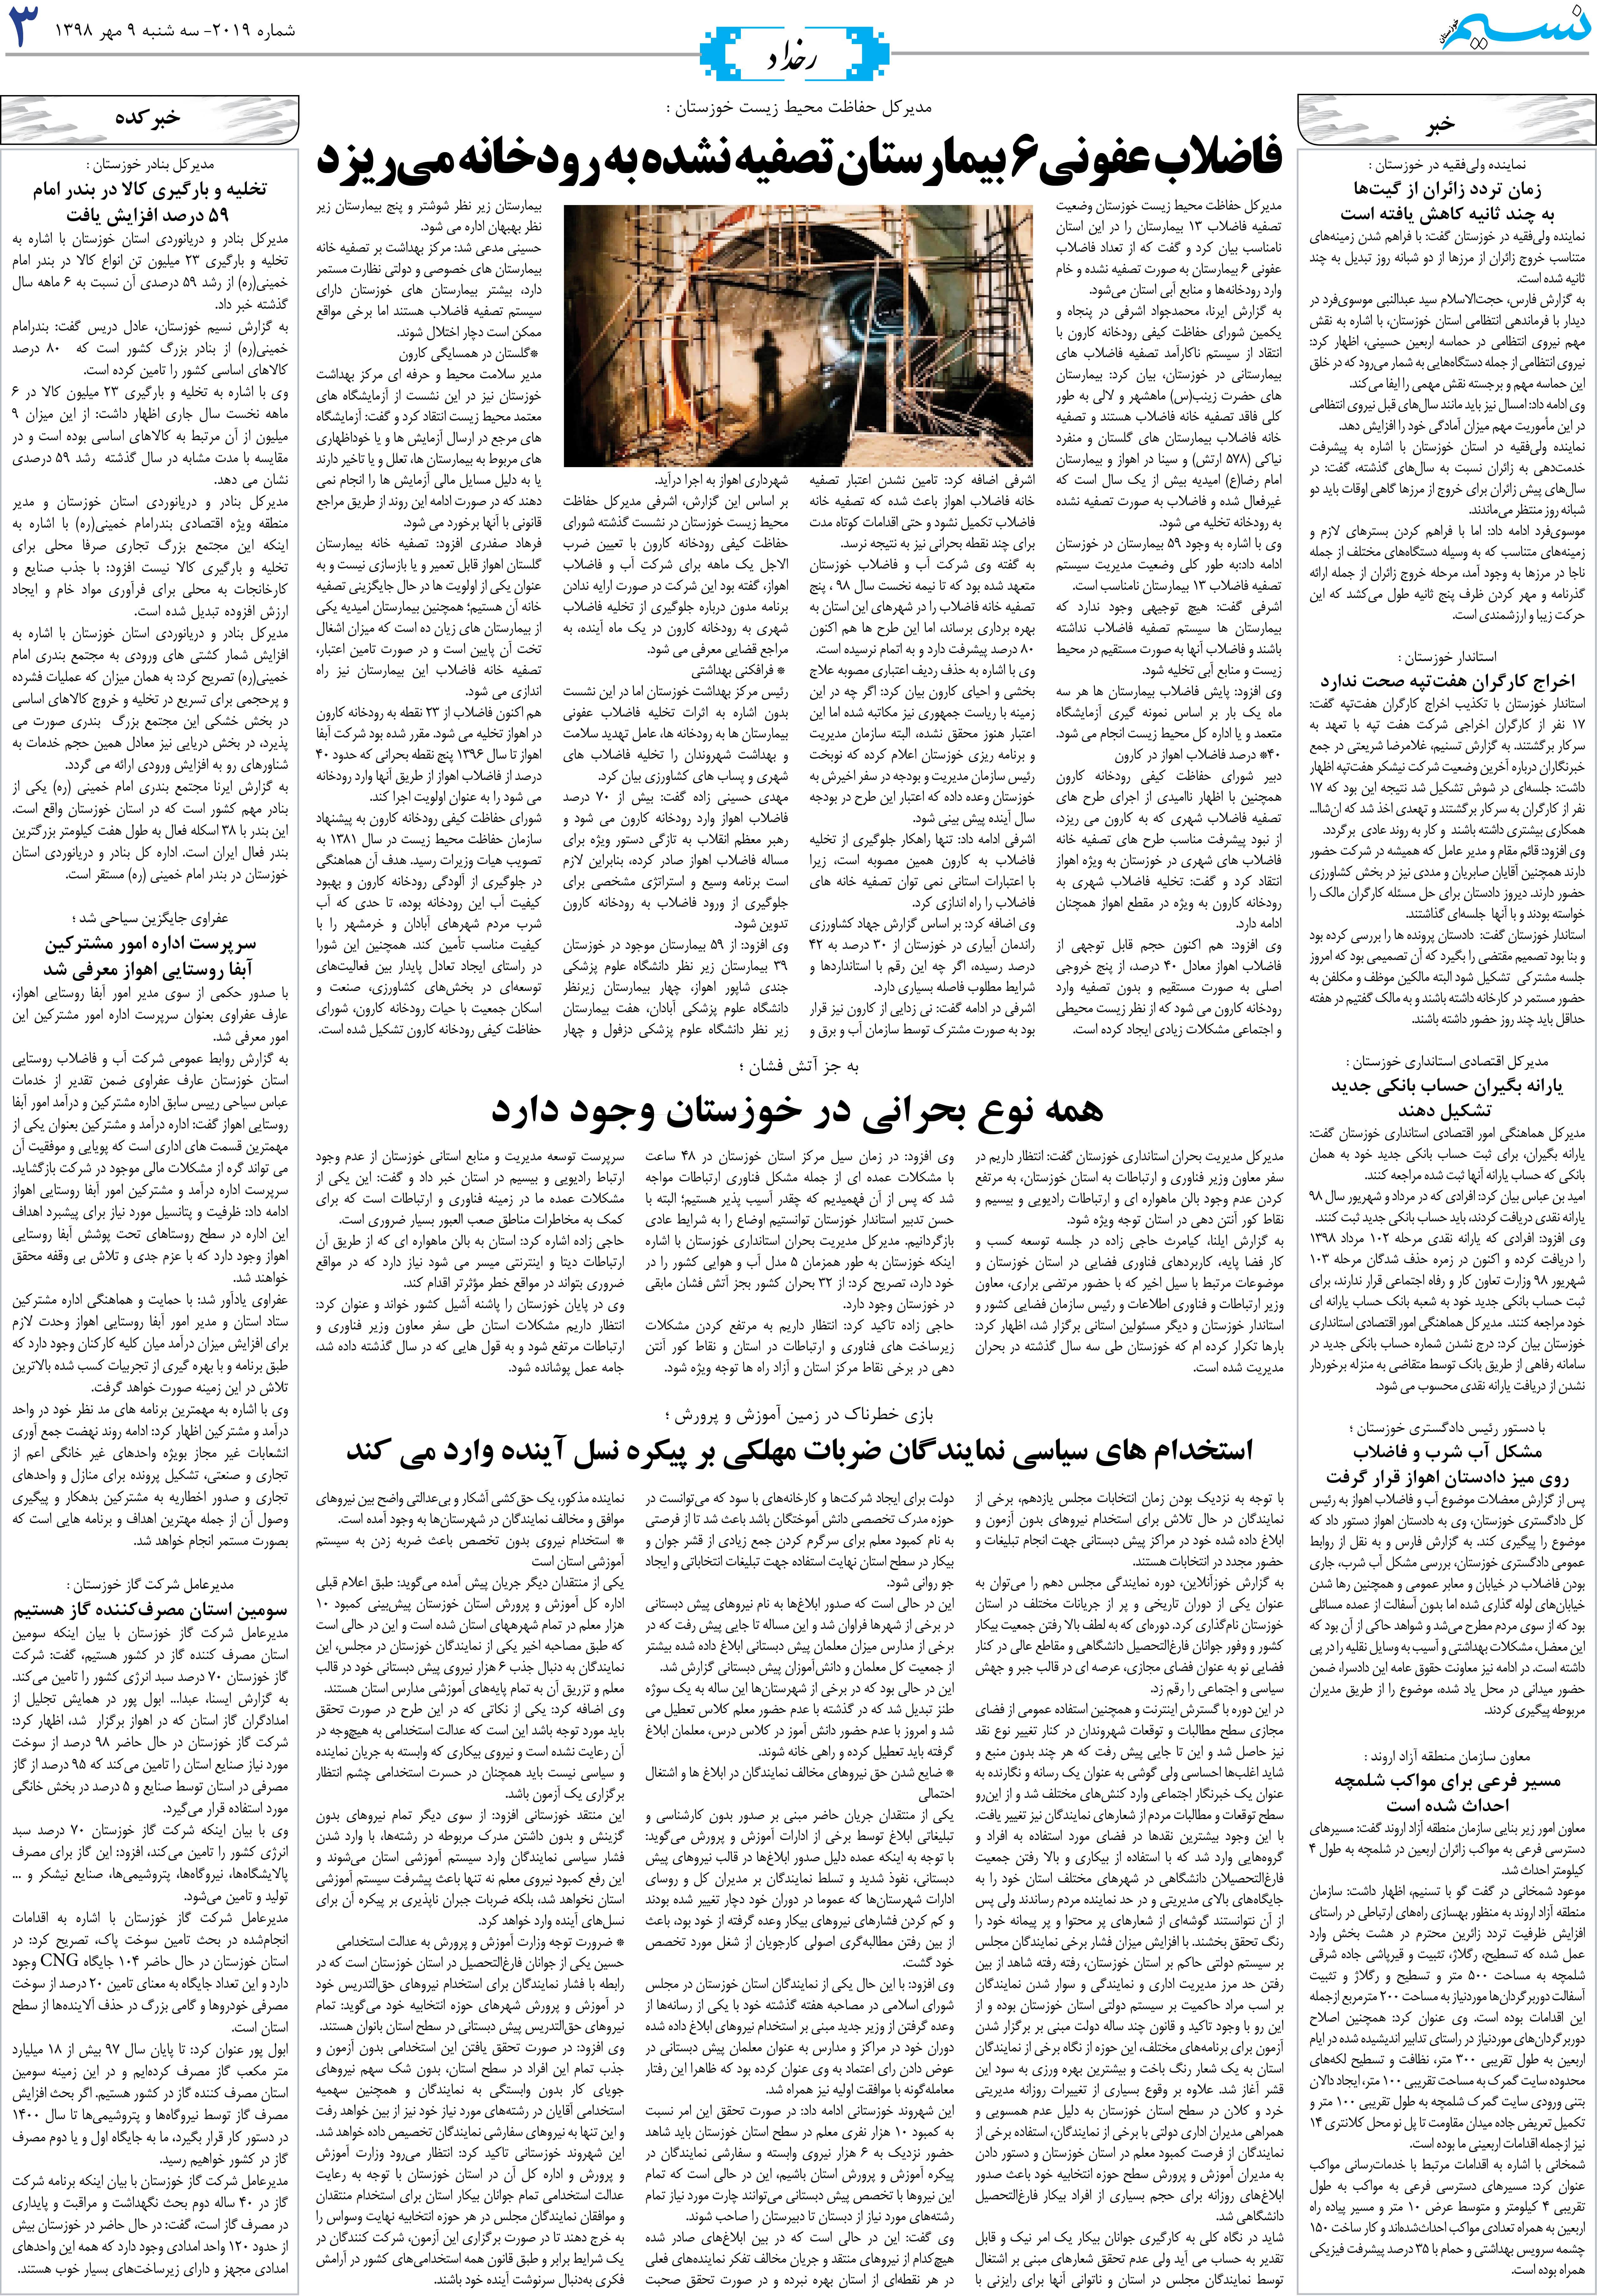 صفحه رخداد روزنامه نسیم شماره 2019